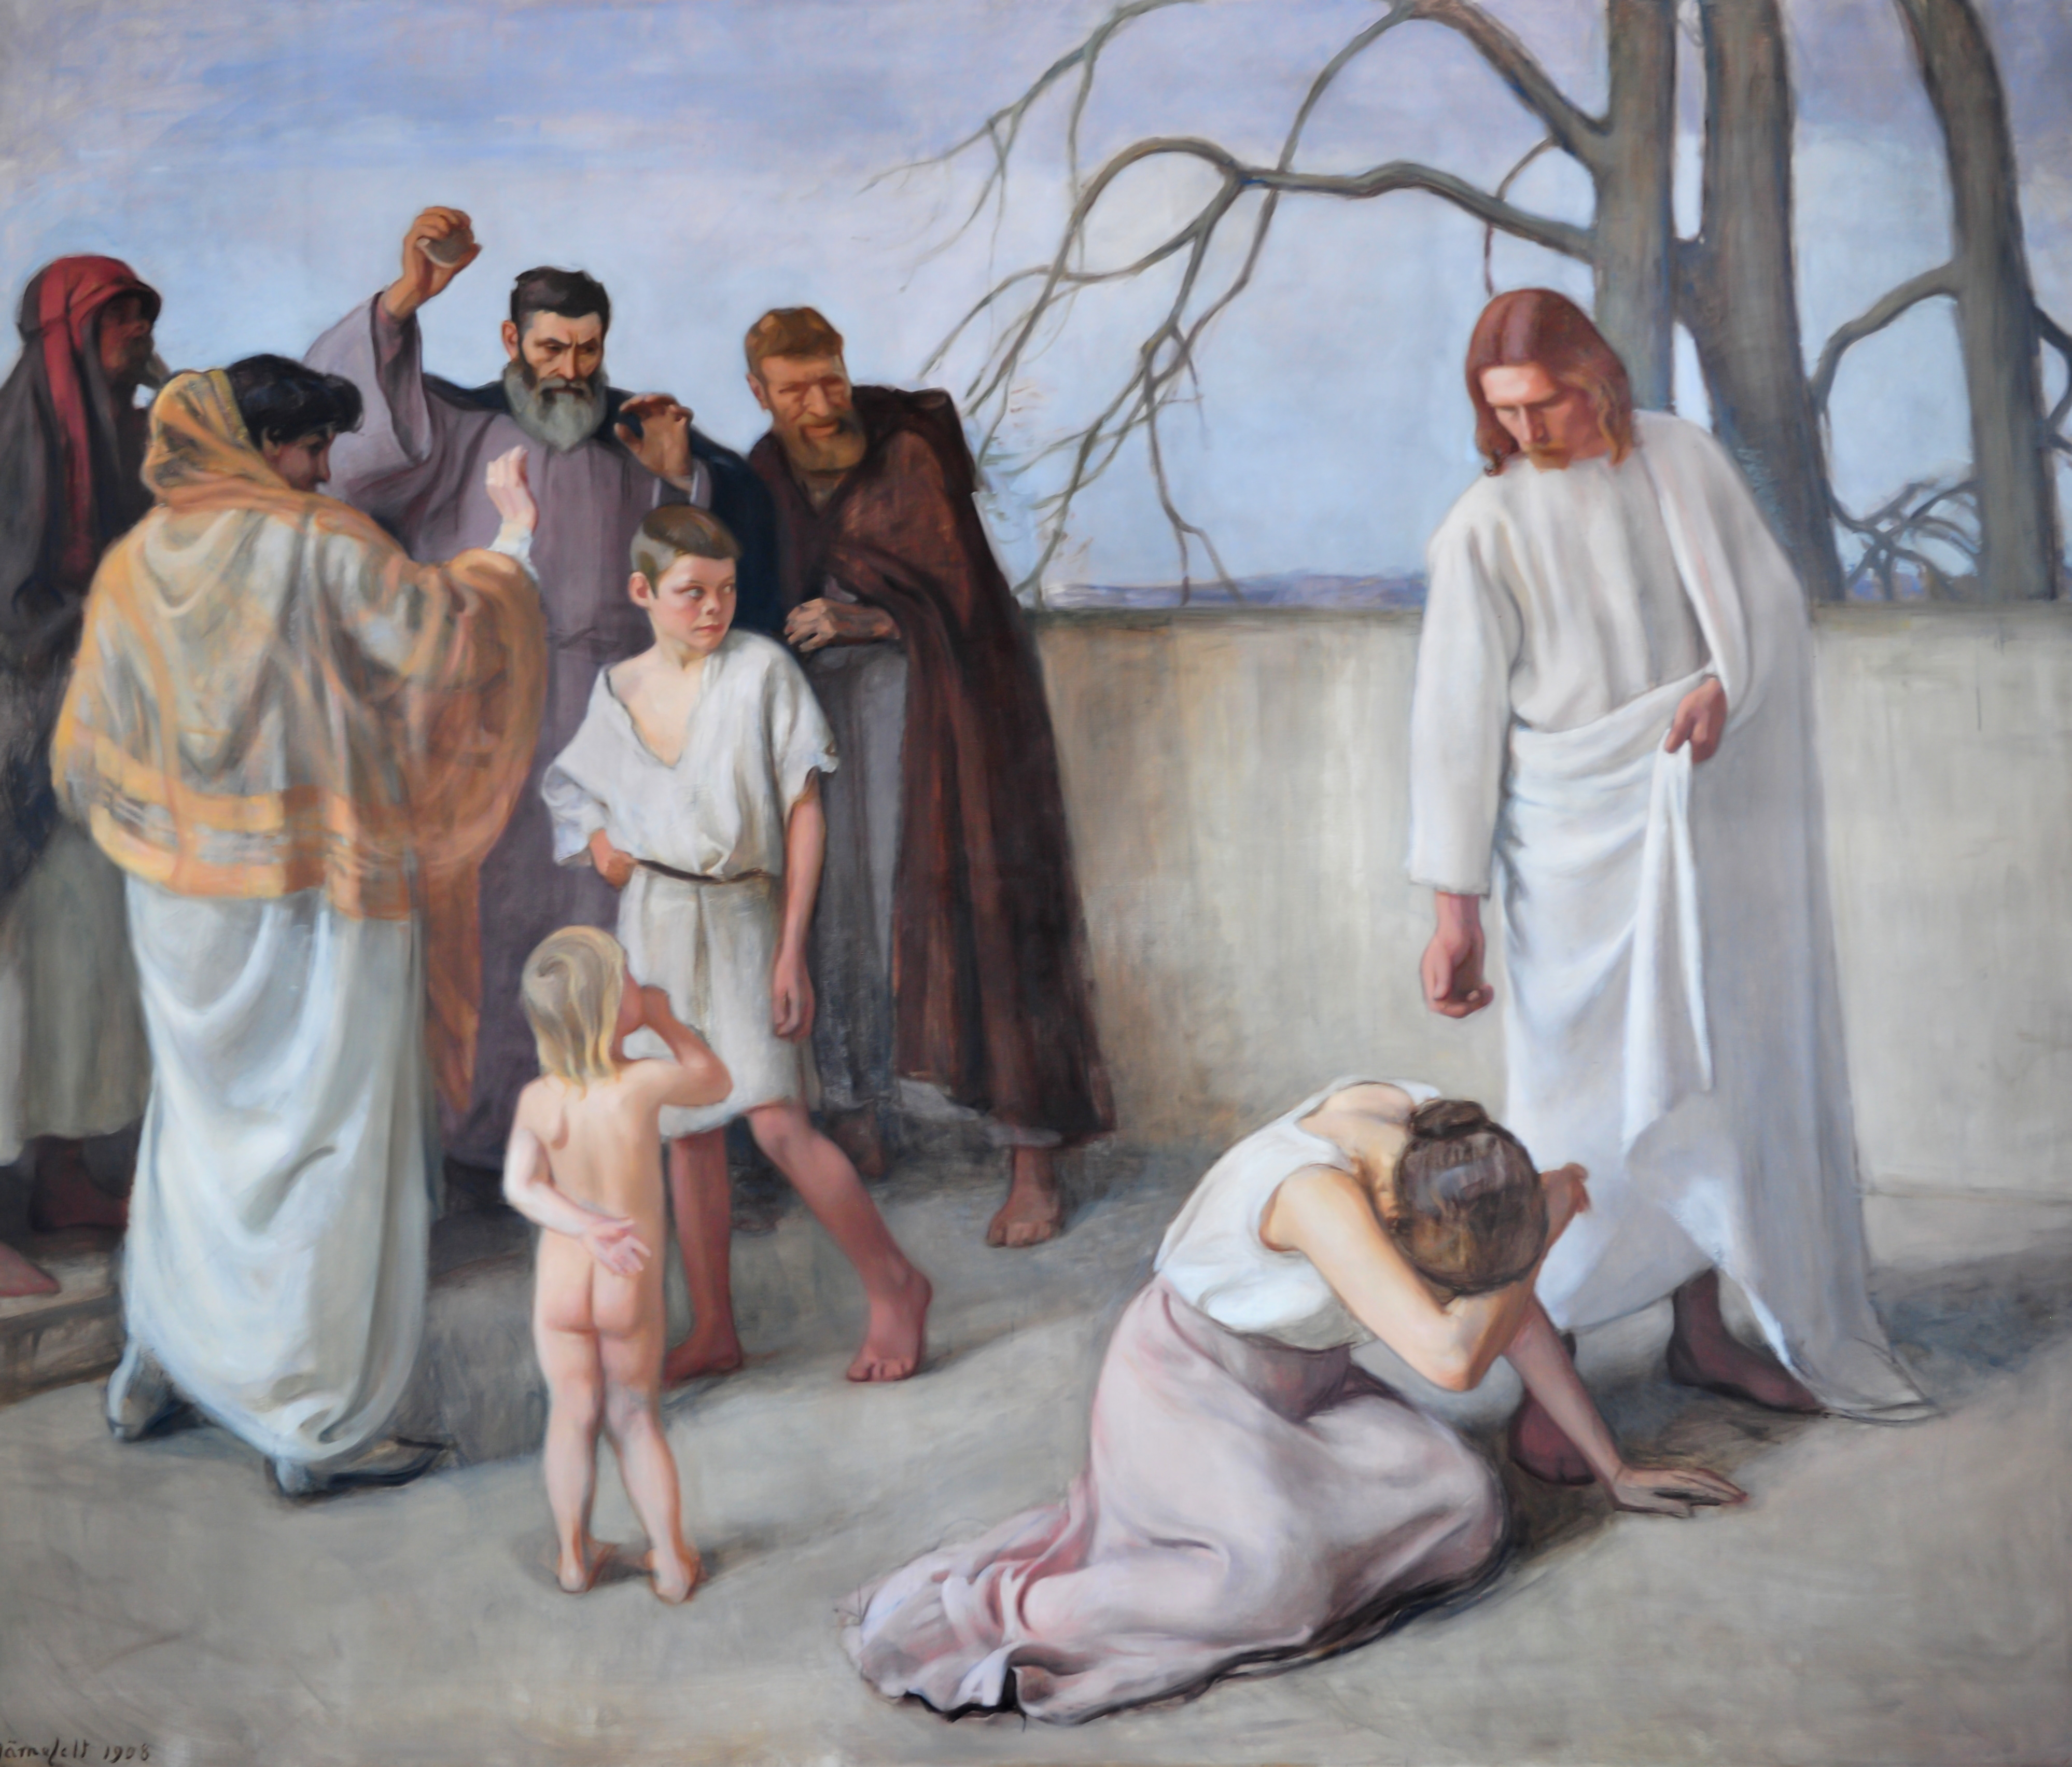 Pastellisävyinen maalaus. Oikealla puolella on Jeesus, joka ojentaa kättään maassa itkevälle naiselle. Vasemmassa laidassa on ihmisryhmä, joka katsoo tapahtumaa. Ryhmässä on mies, joka on valmis heittämään kiven.